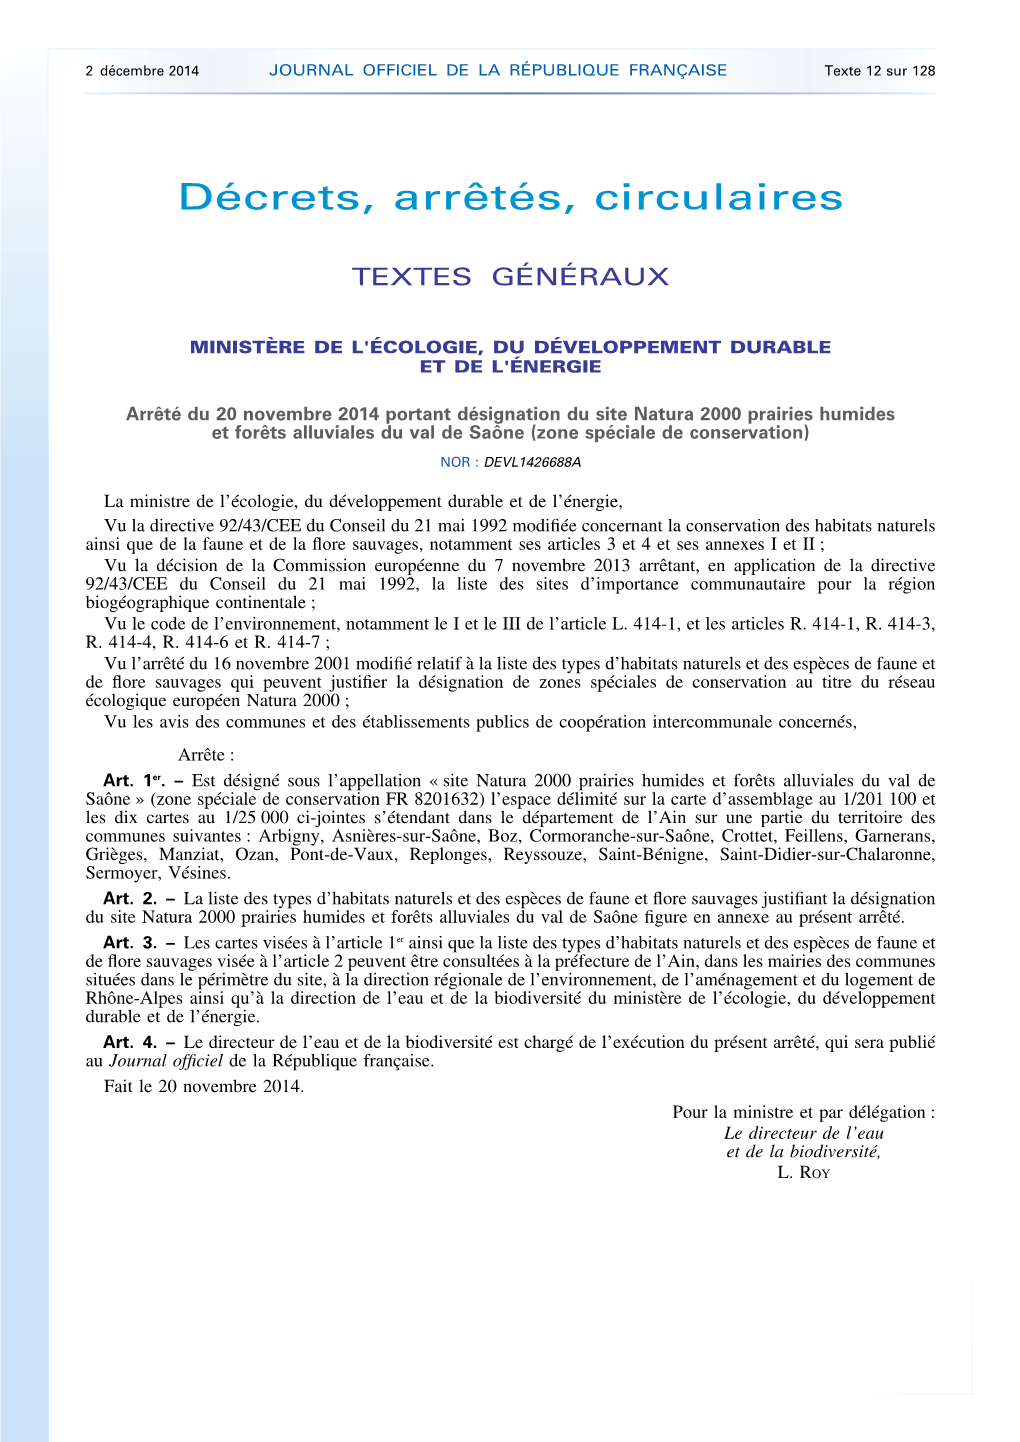 JOURNAL OFFICIEL DE LA RÉPUBLIQUE FRANÇAISE Texte 12 Sur 128